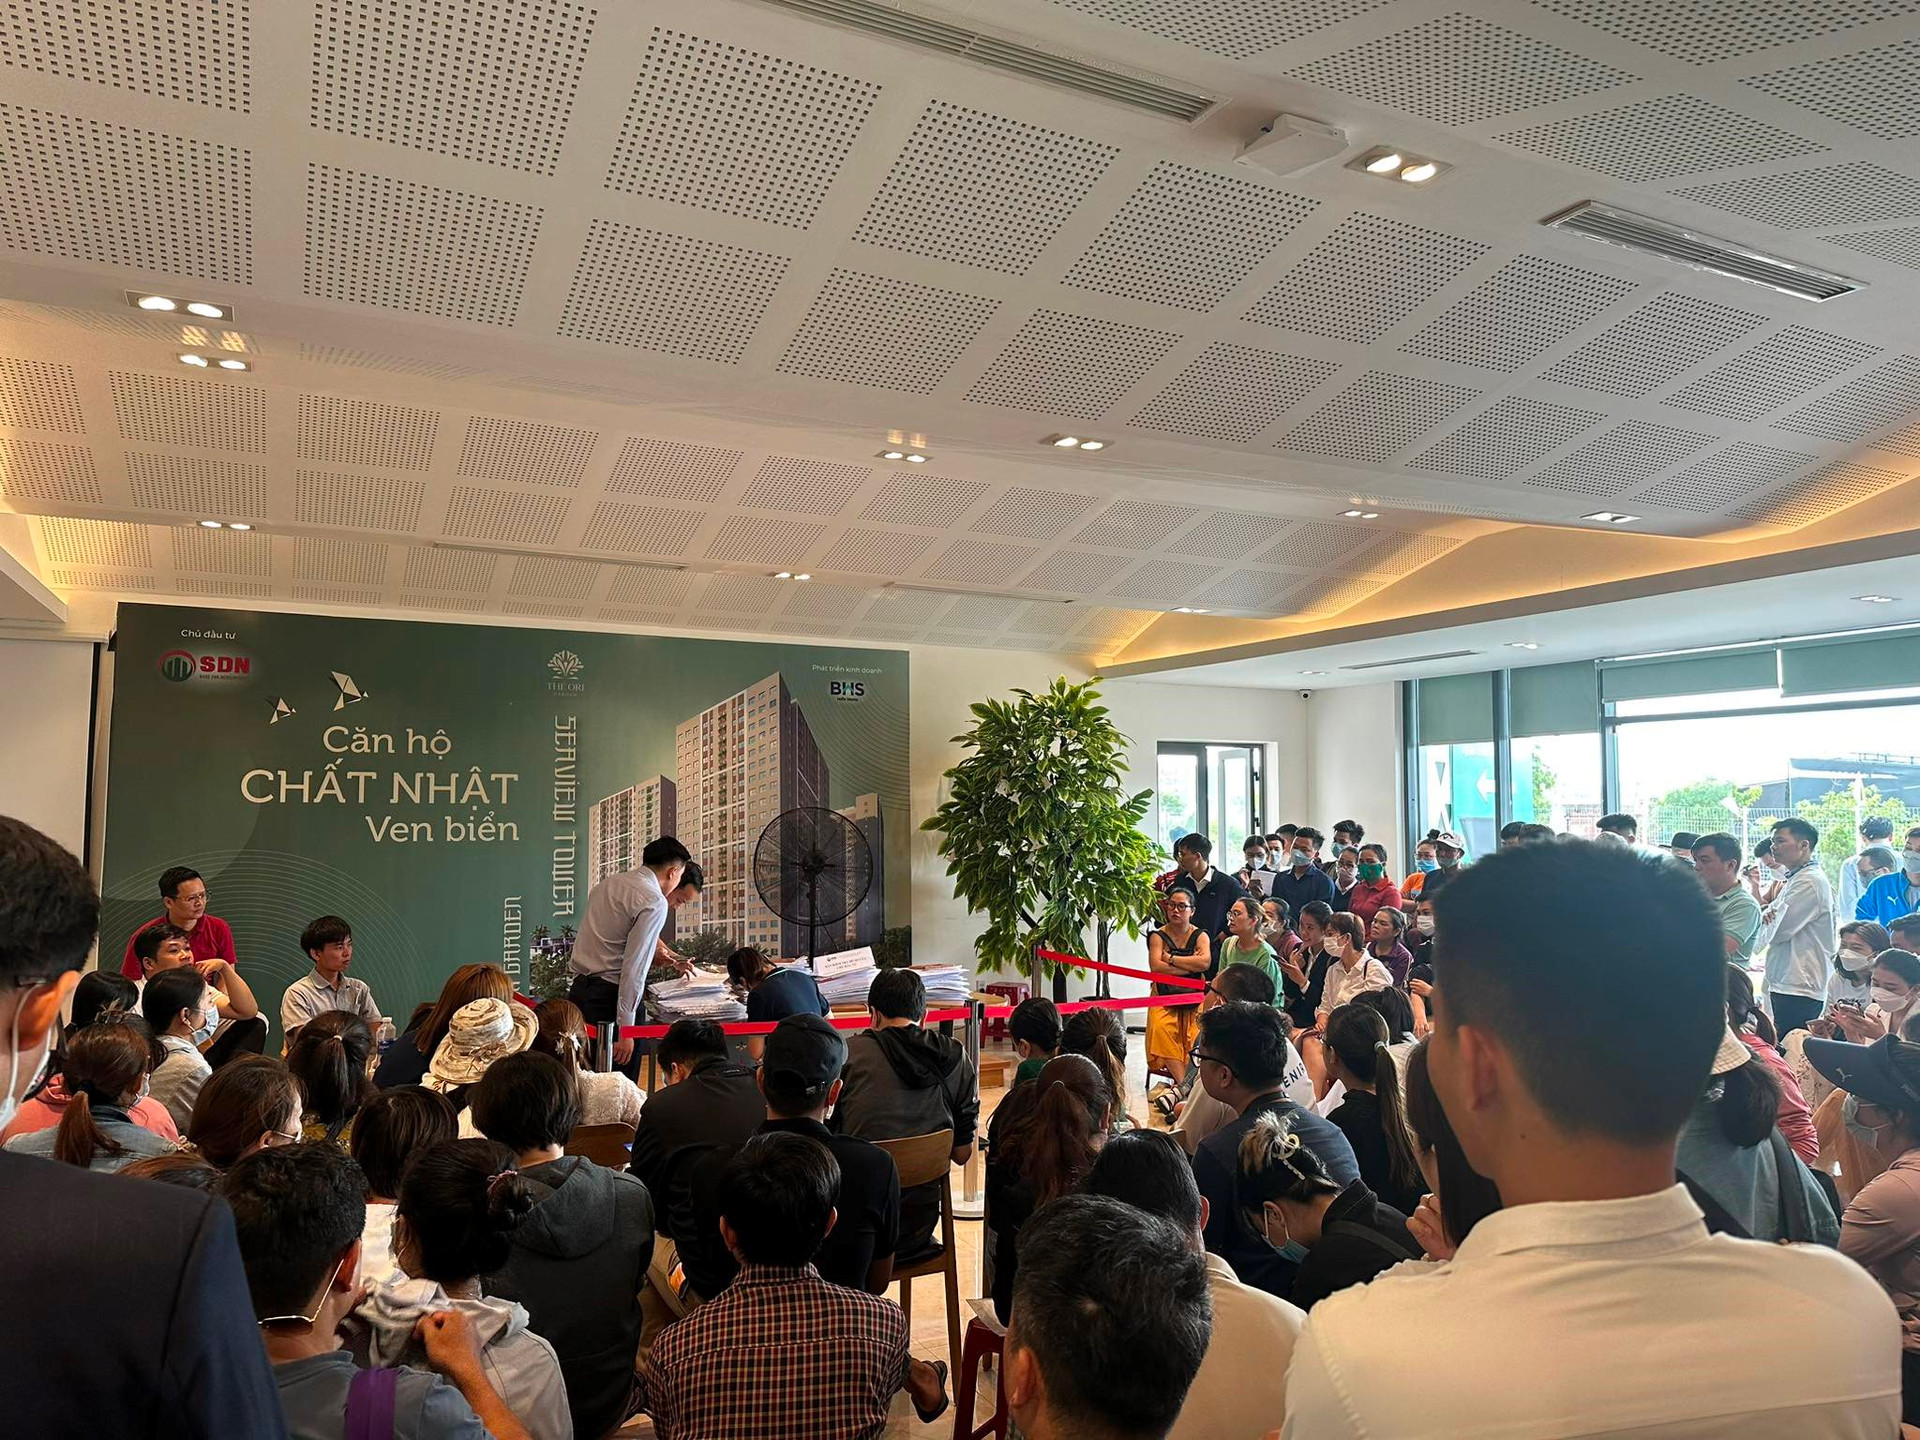 Một dự án chung cư tại Đà Nẵng khiến 200 khách phải xếp hàng từ 5 giờ sáng đăng ký mua, vì sao?